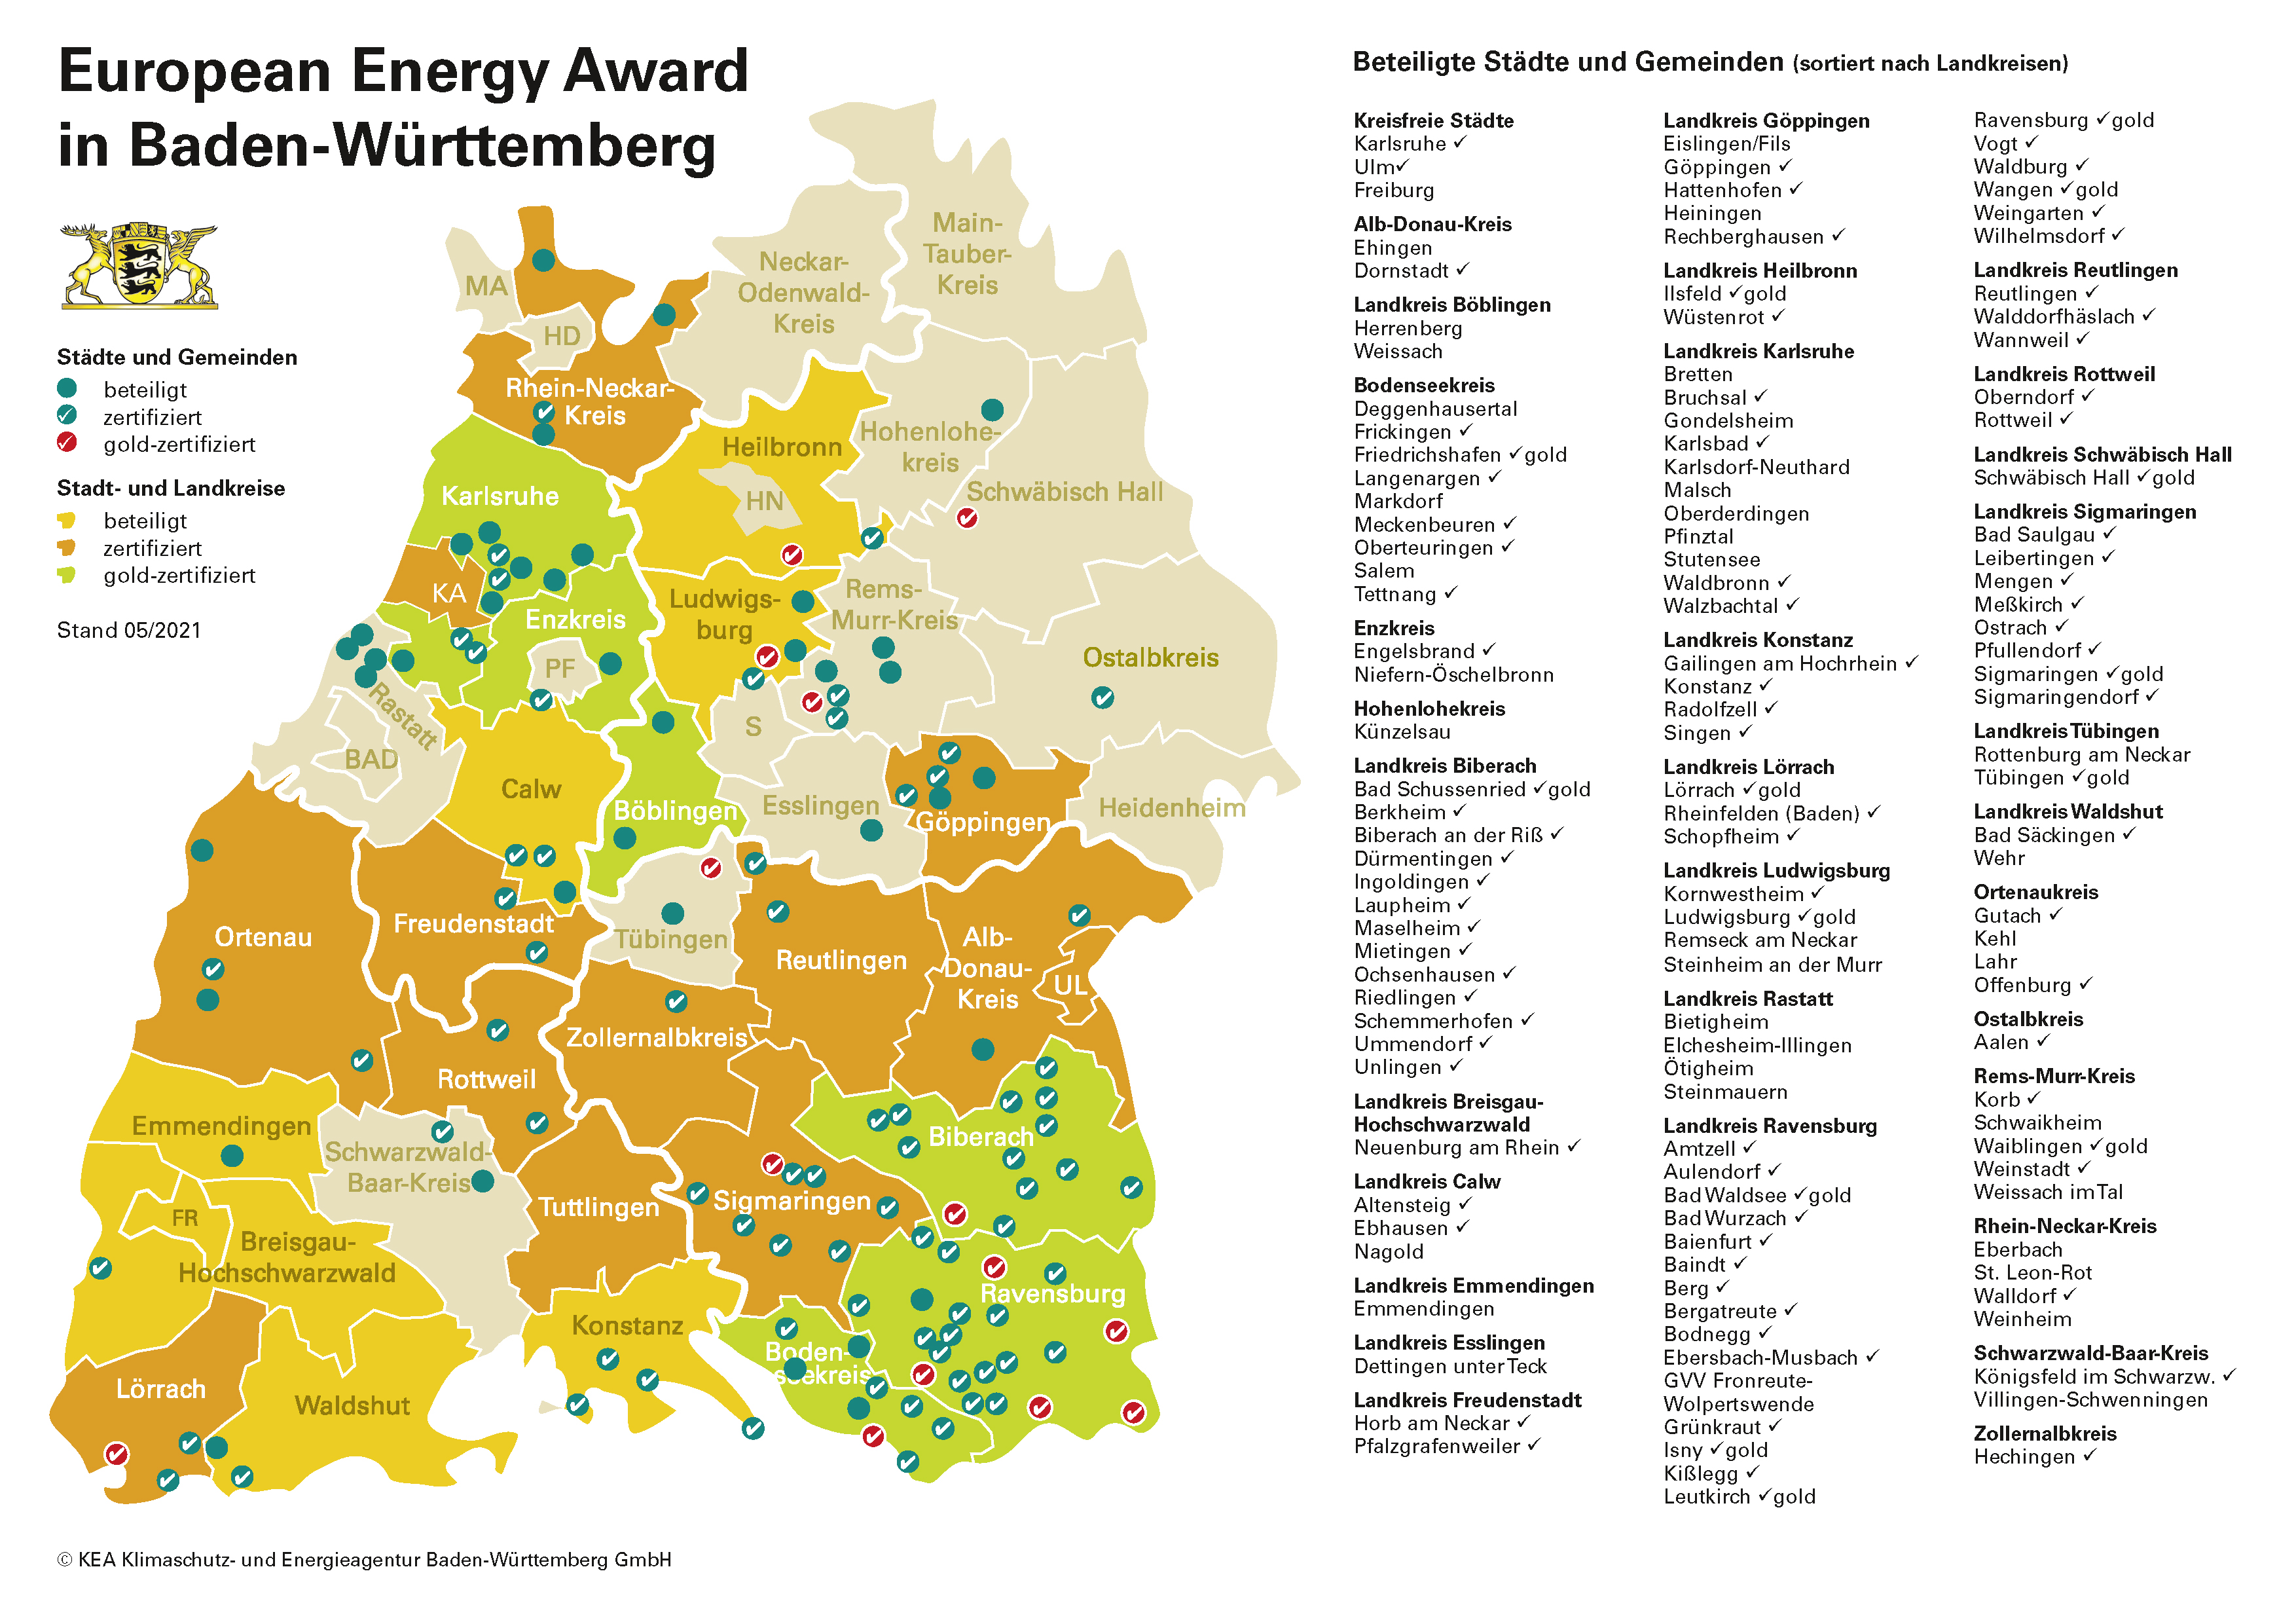  Abbildung Karte der eea-Kommunen in Baden-Württemberg 